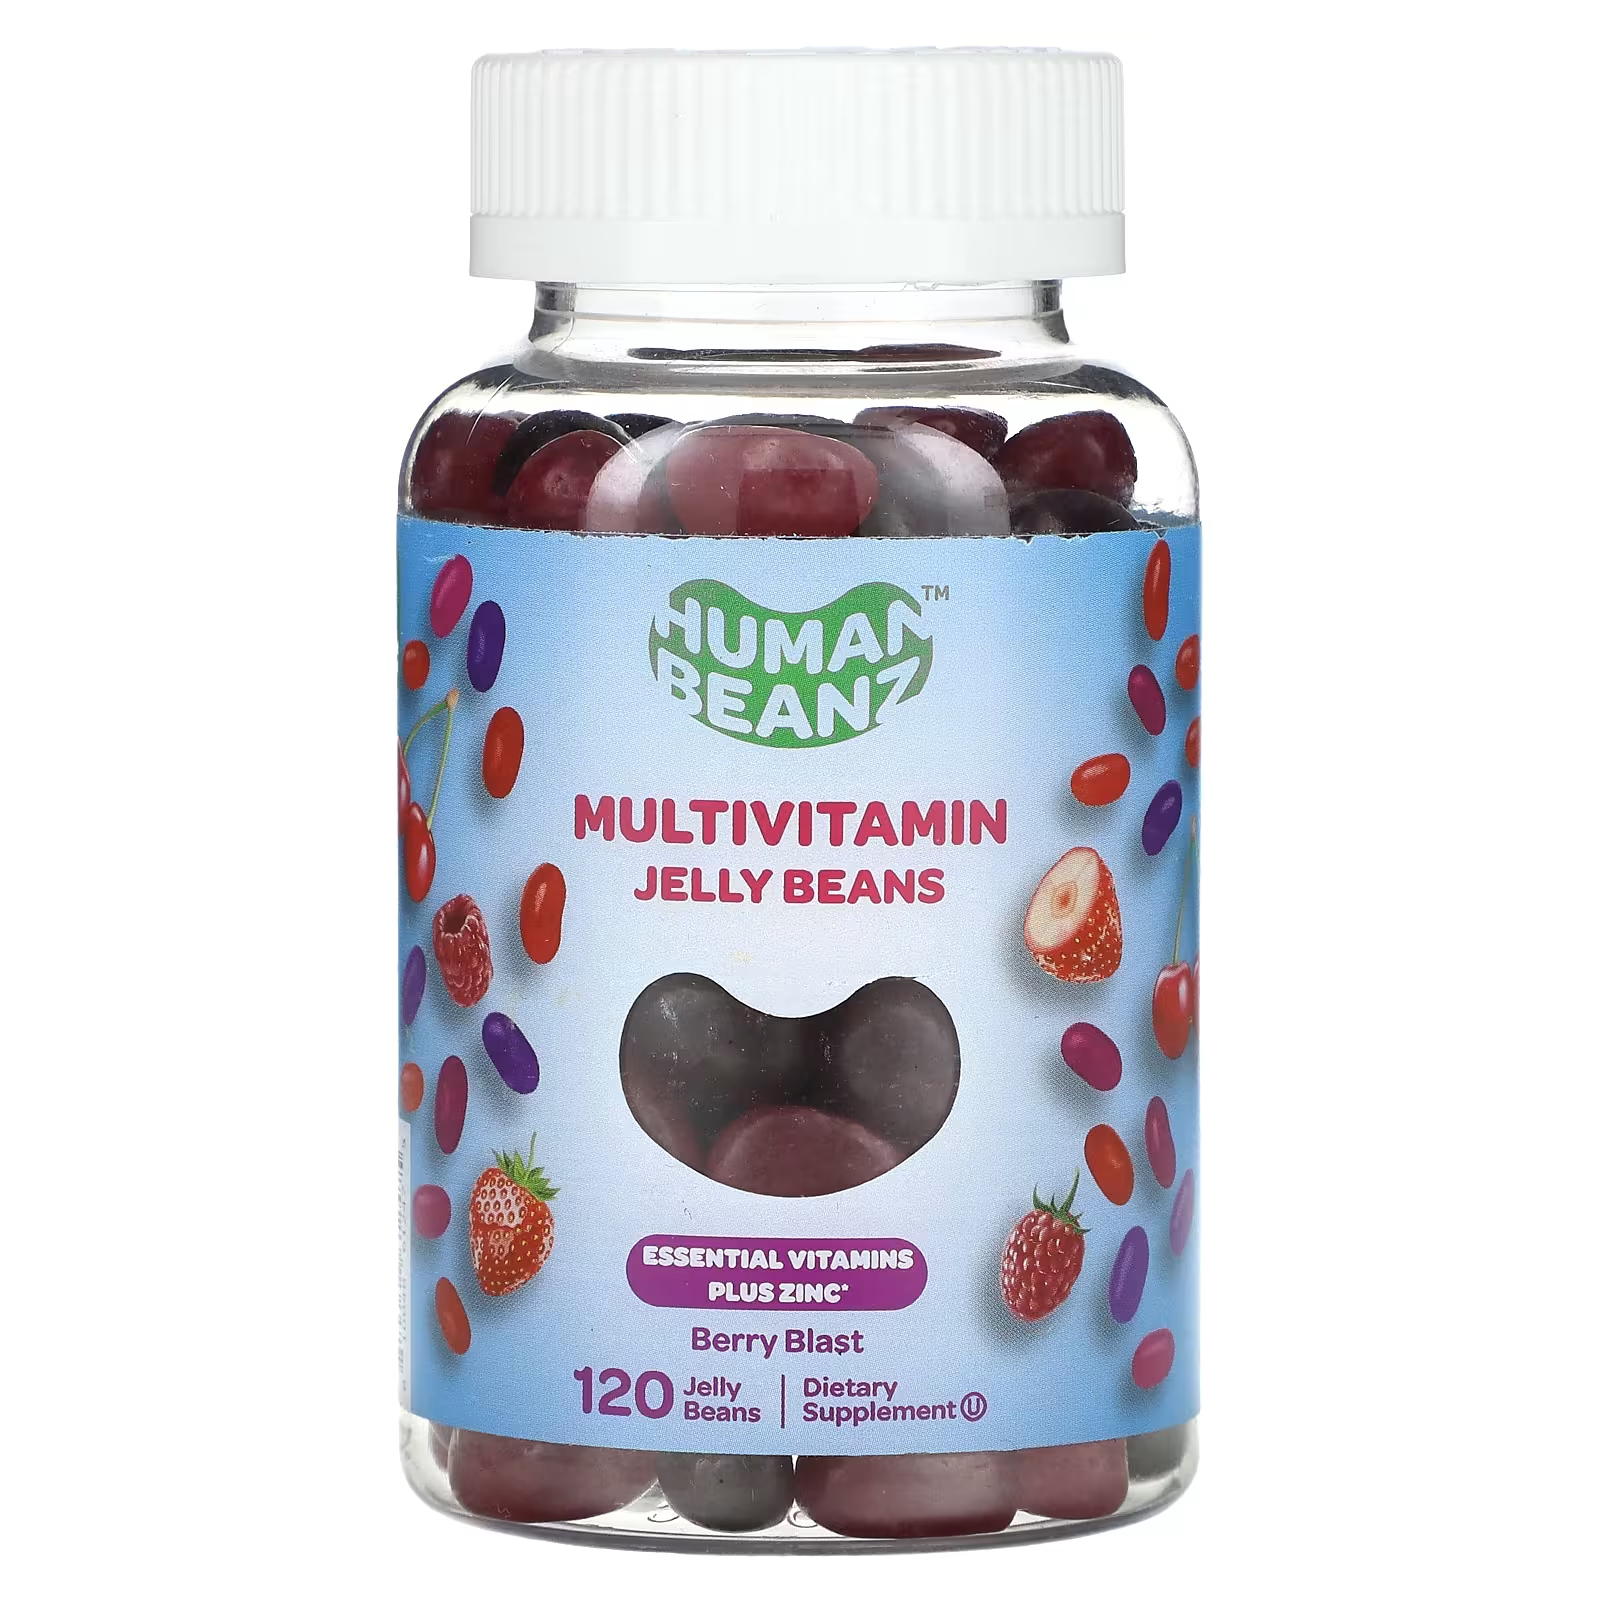 Мультивитаминная добавка Human Beanz Berry Blast, 120 жевательных конфет пробиотическая добавка culturelle berry blast с растительной клетчаткой 30 жевательных таблеток